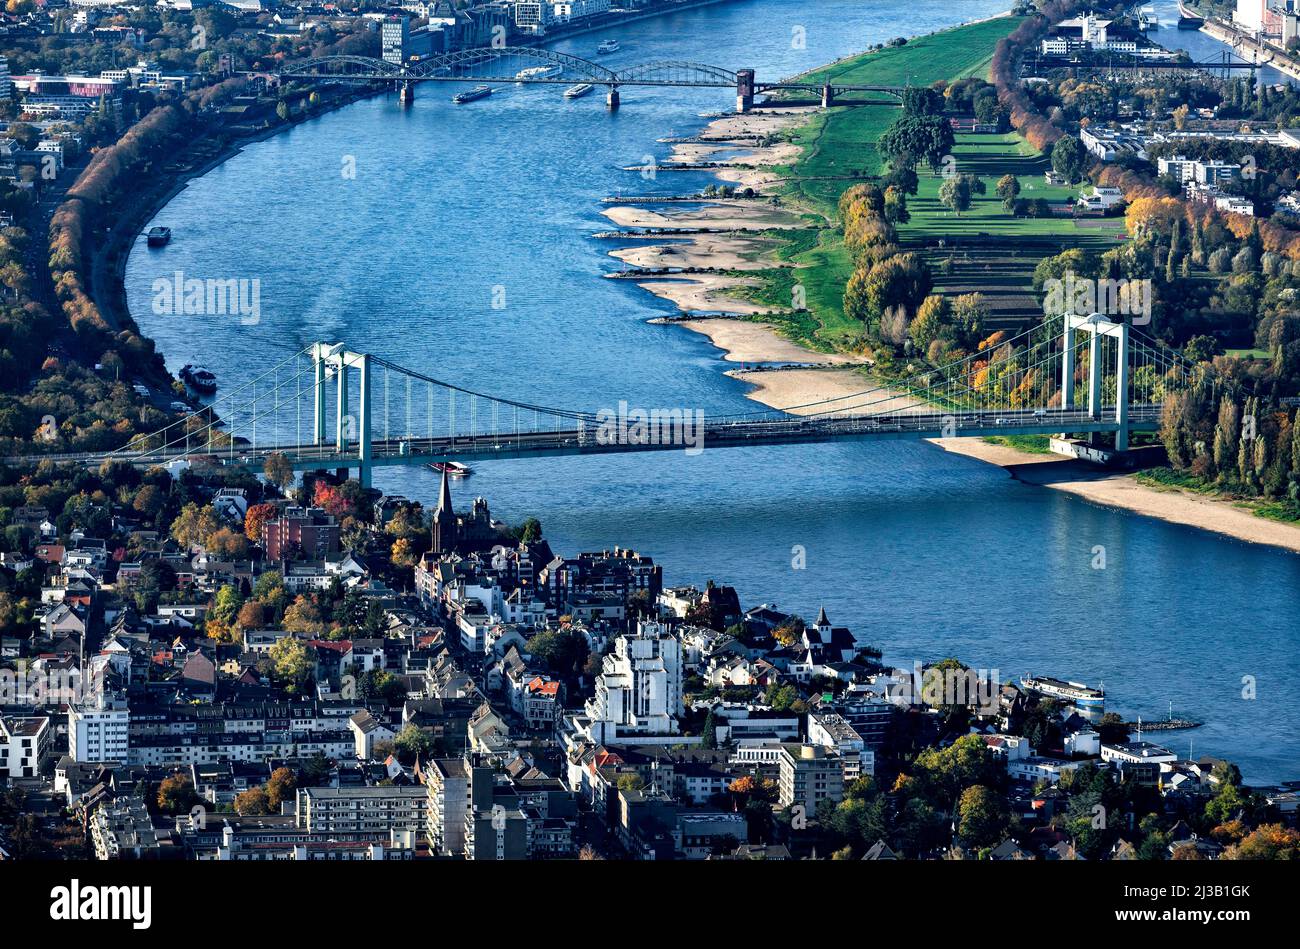 Rheinbrücke Köln-Rodenkirchen, Rheinbrücke der Bundesautobahn 4, Köln, Rheinland, Nordrhein-Westfalen, Deutschland Stockfoto